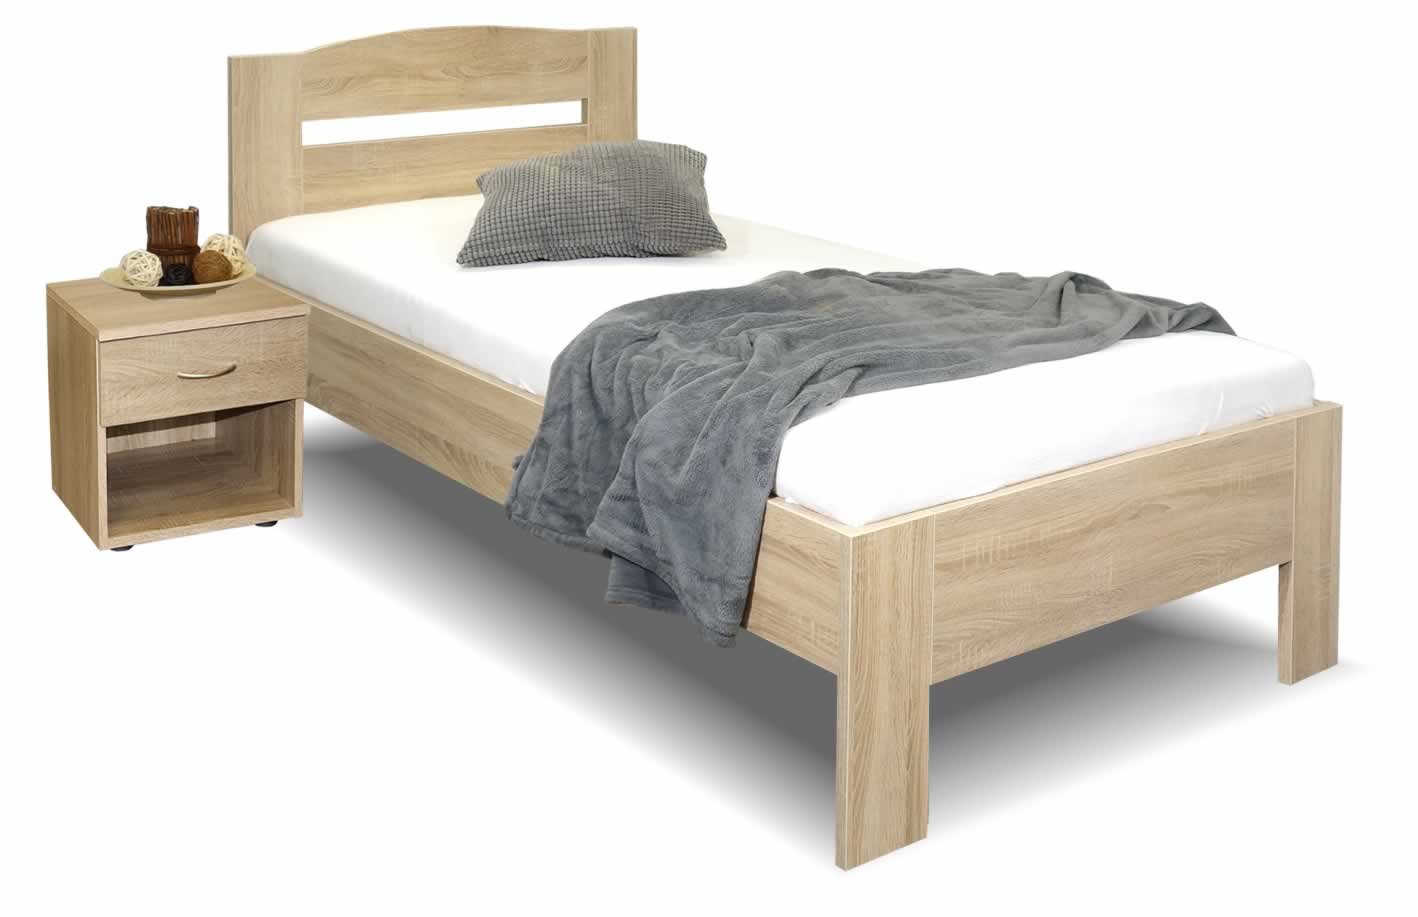 Zvýšená postel jednolůžko Maria, 80x210, 90x210